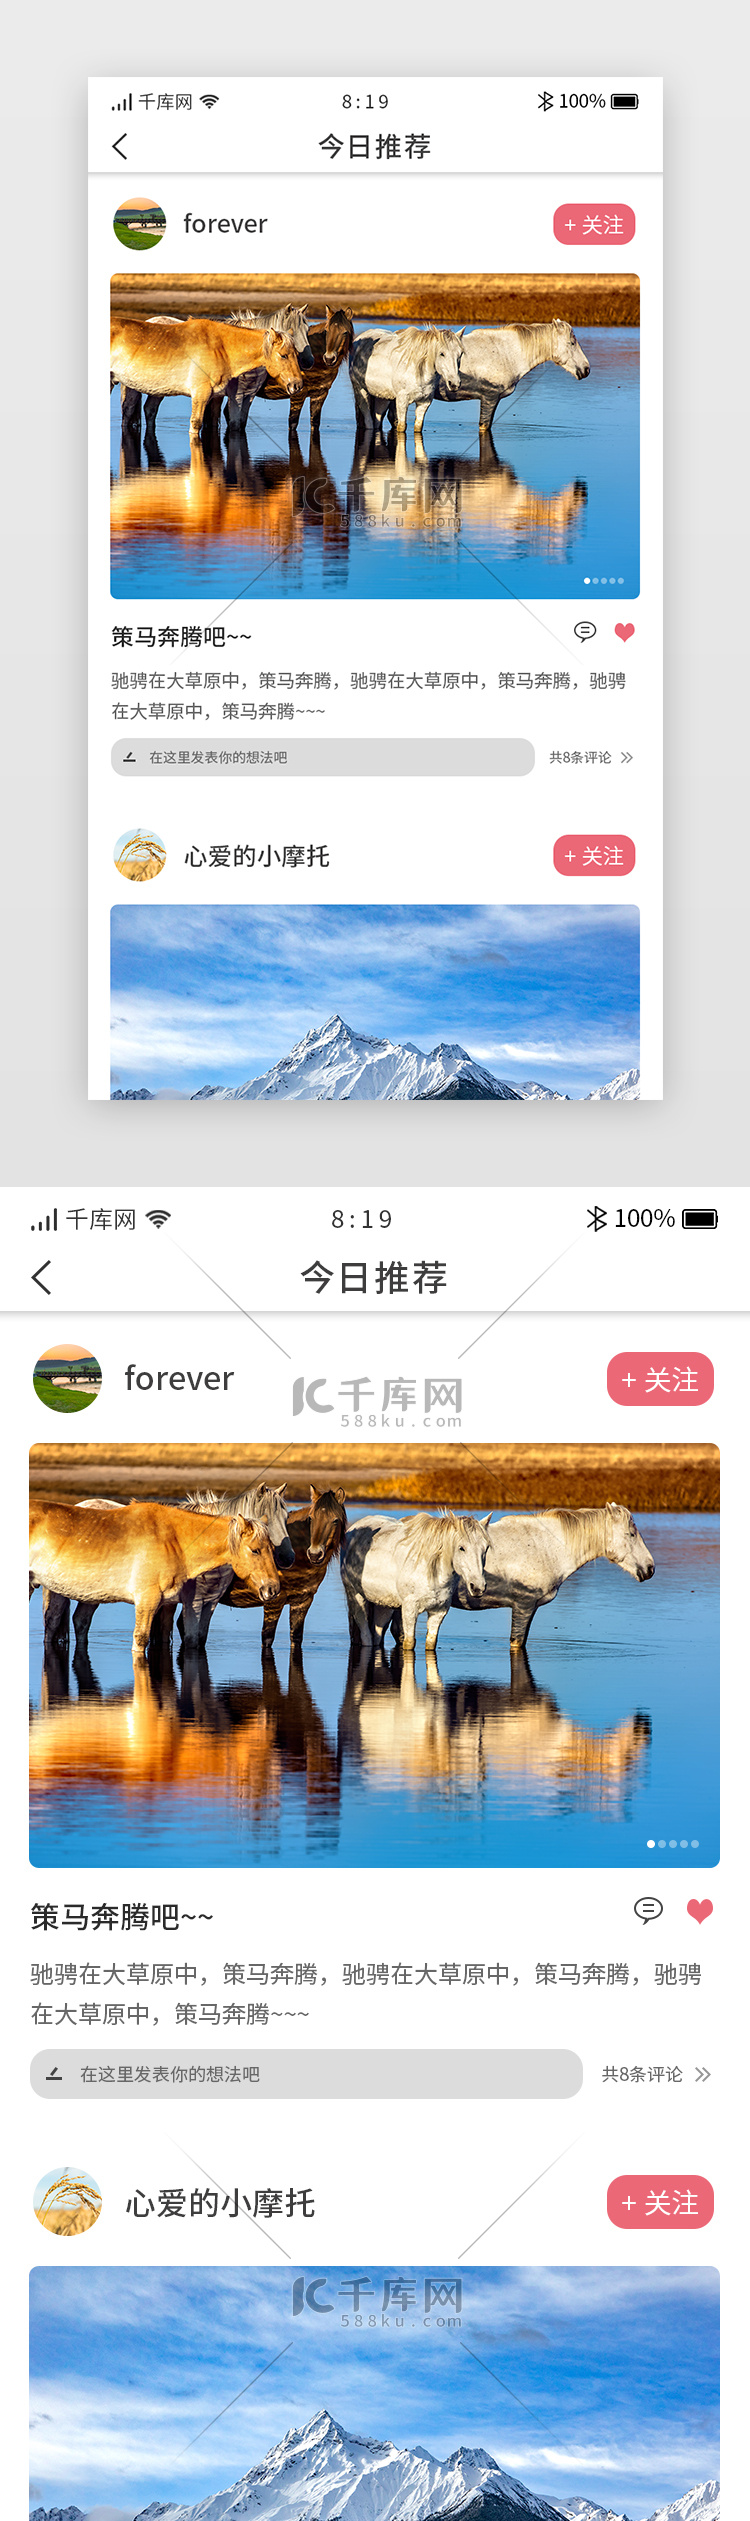 卡片综合类社交app今日推荐详情页